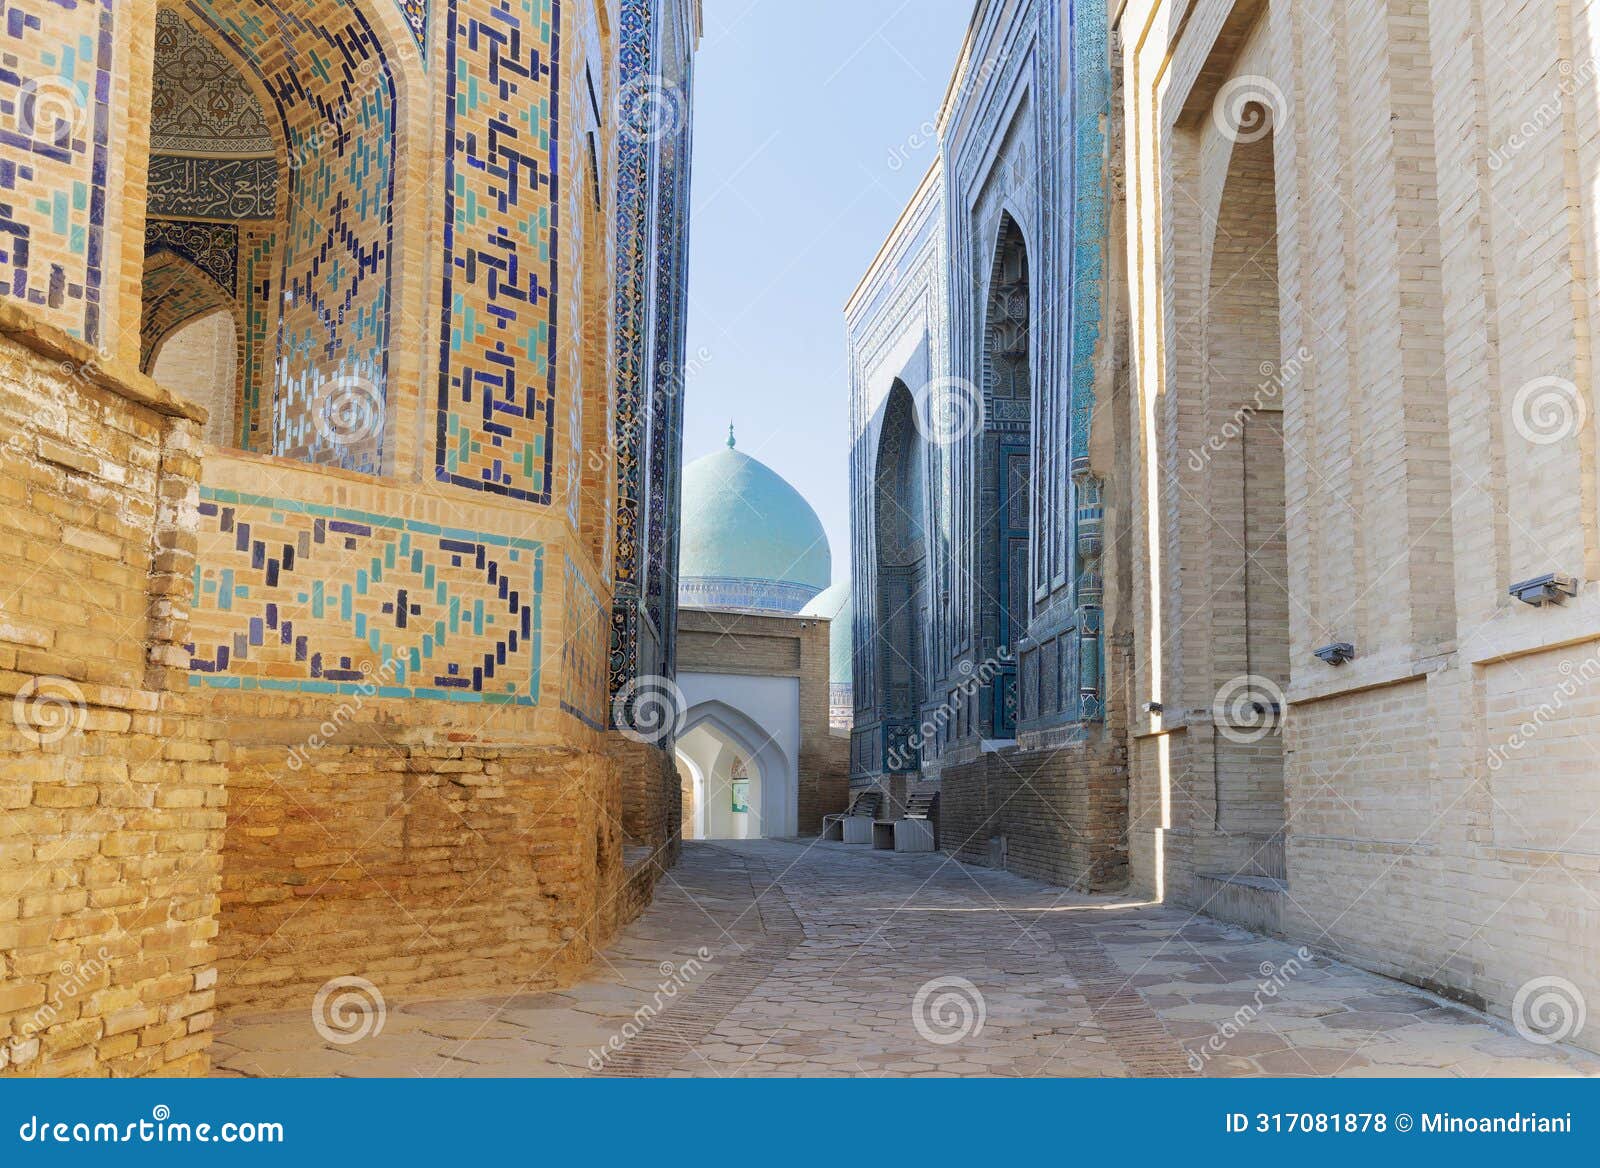 architecture of shah-i-zinda ensemble, samarkand, uzbekistan